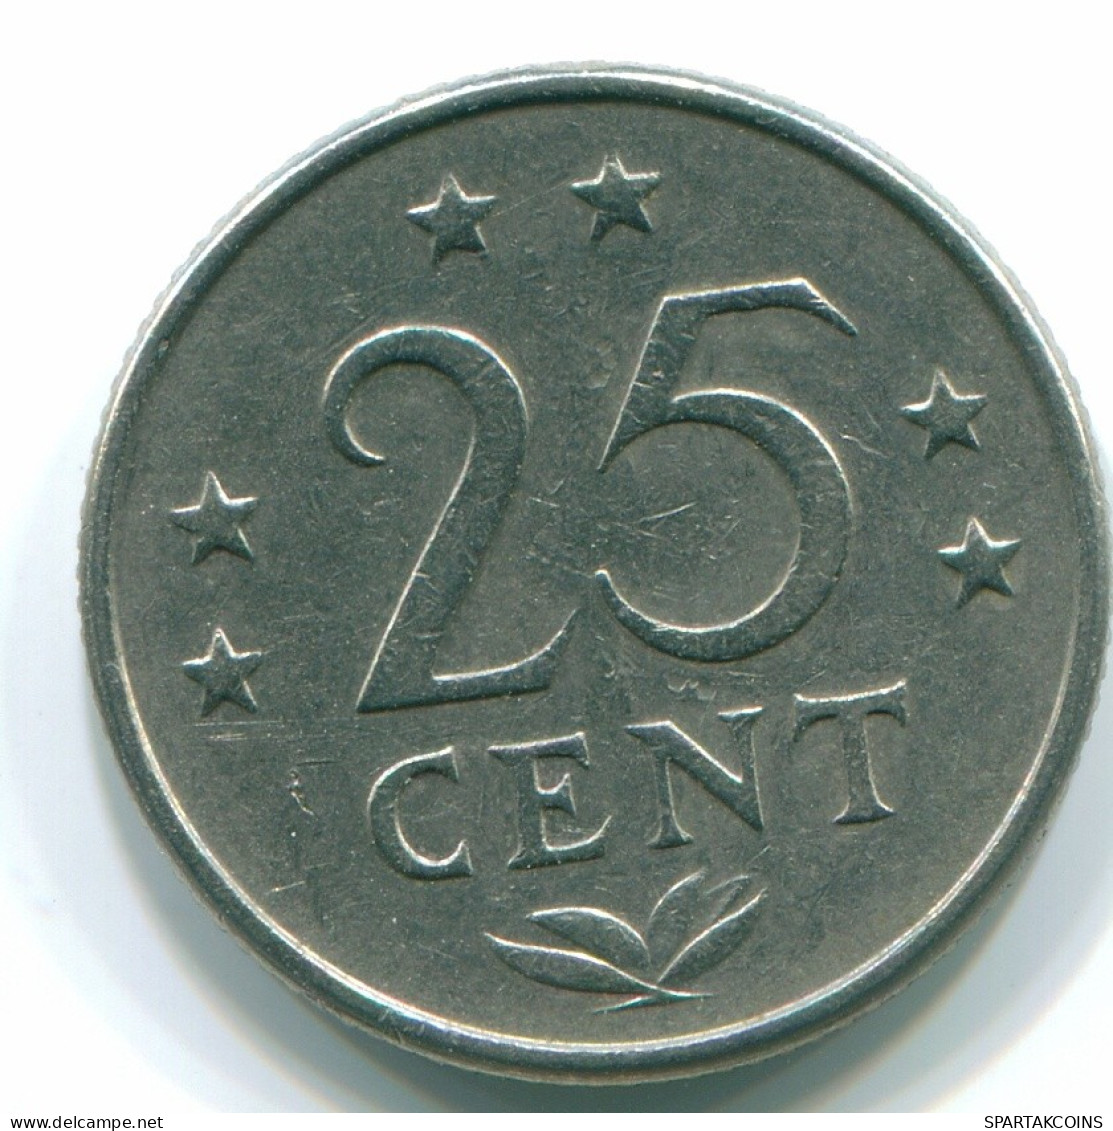 25 CENTS 1970 NIEDERLÄNDISCHE ANTILLEN Nickel Koloniale Münze #S11431.D.A - Antilles Néerlandaises